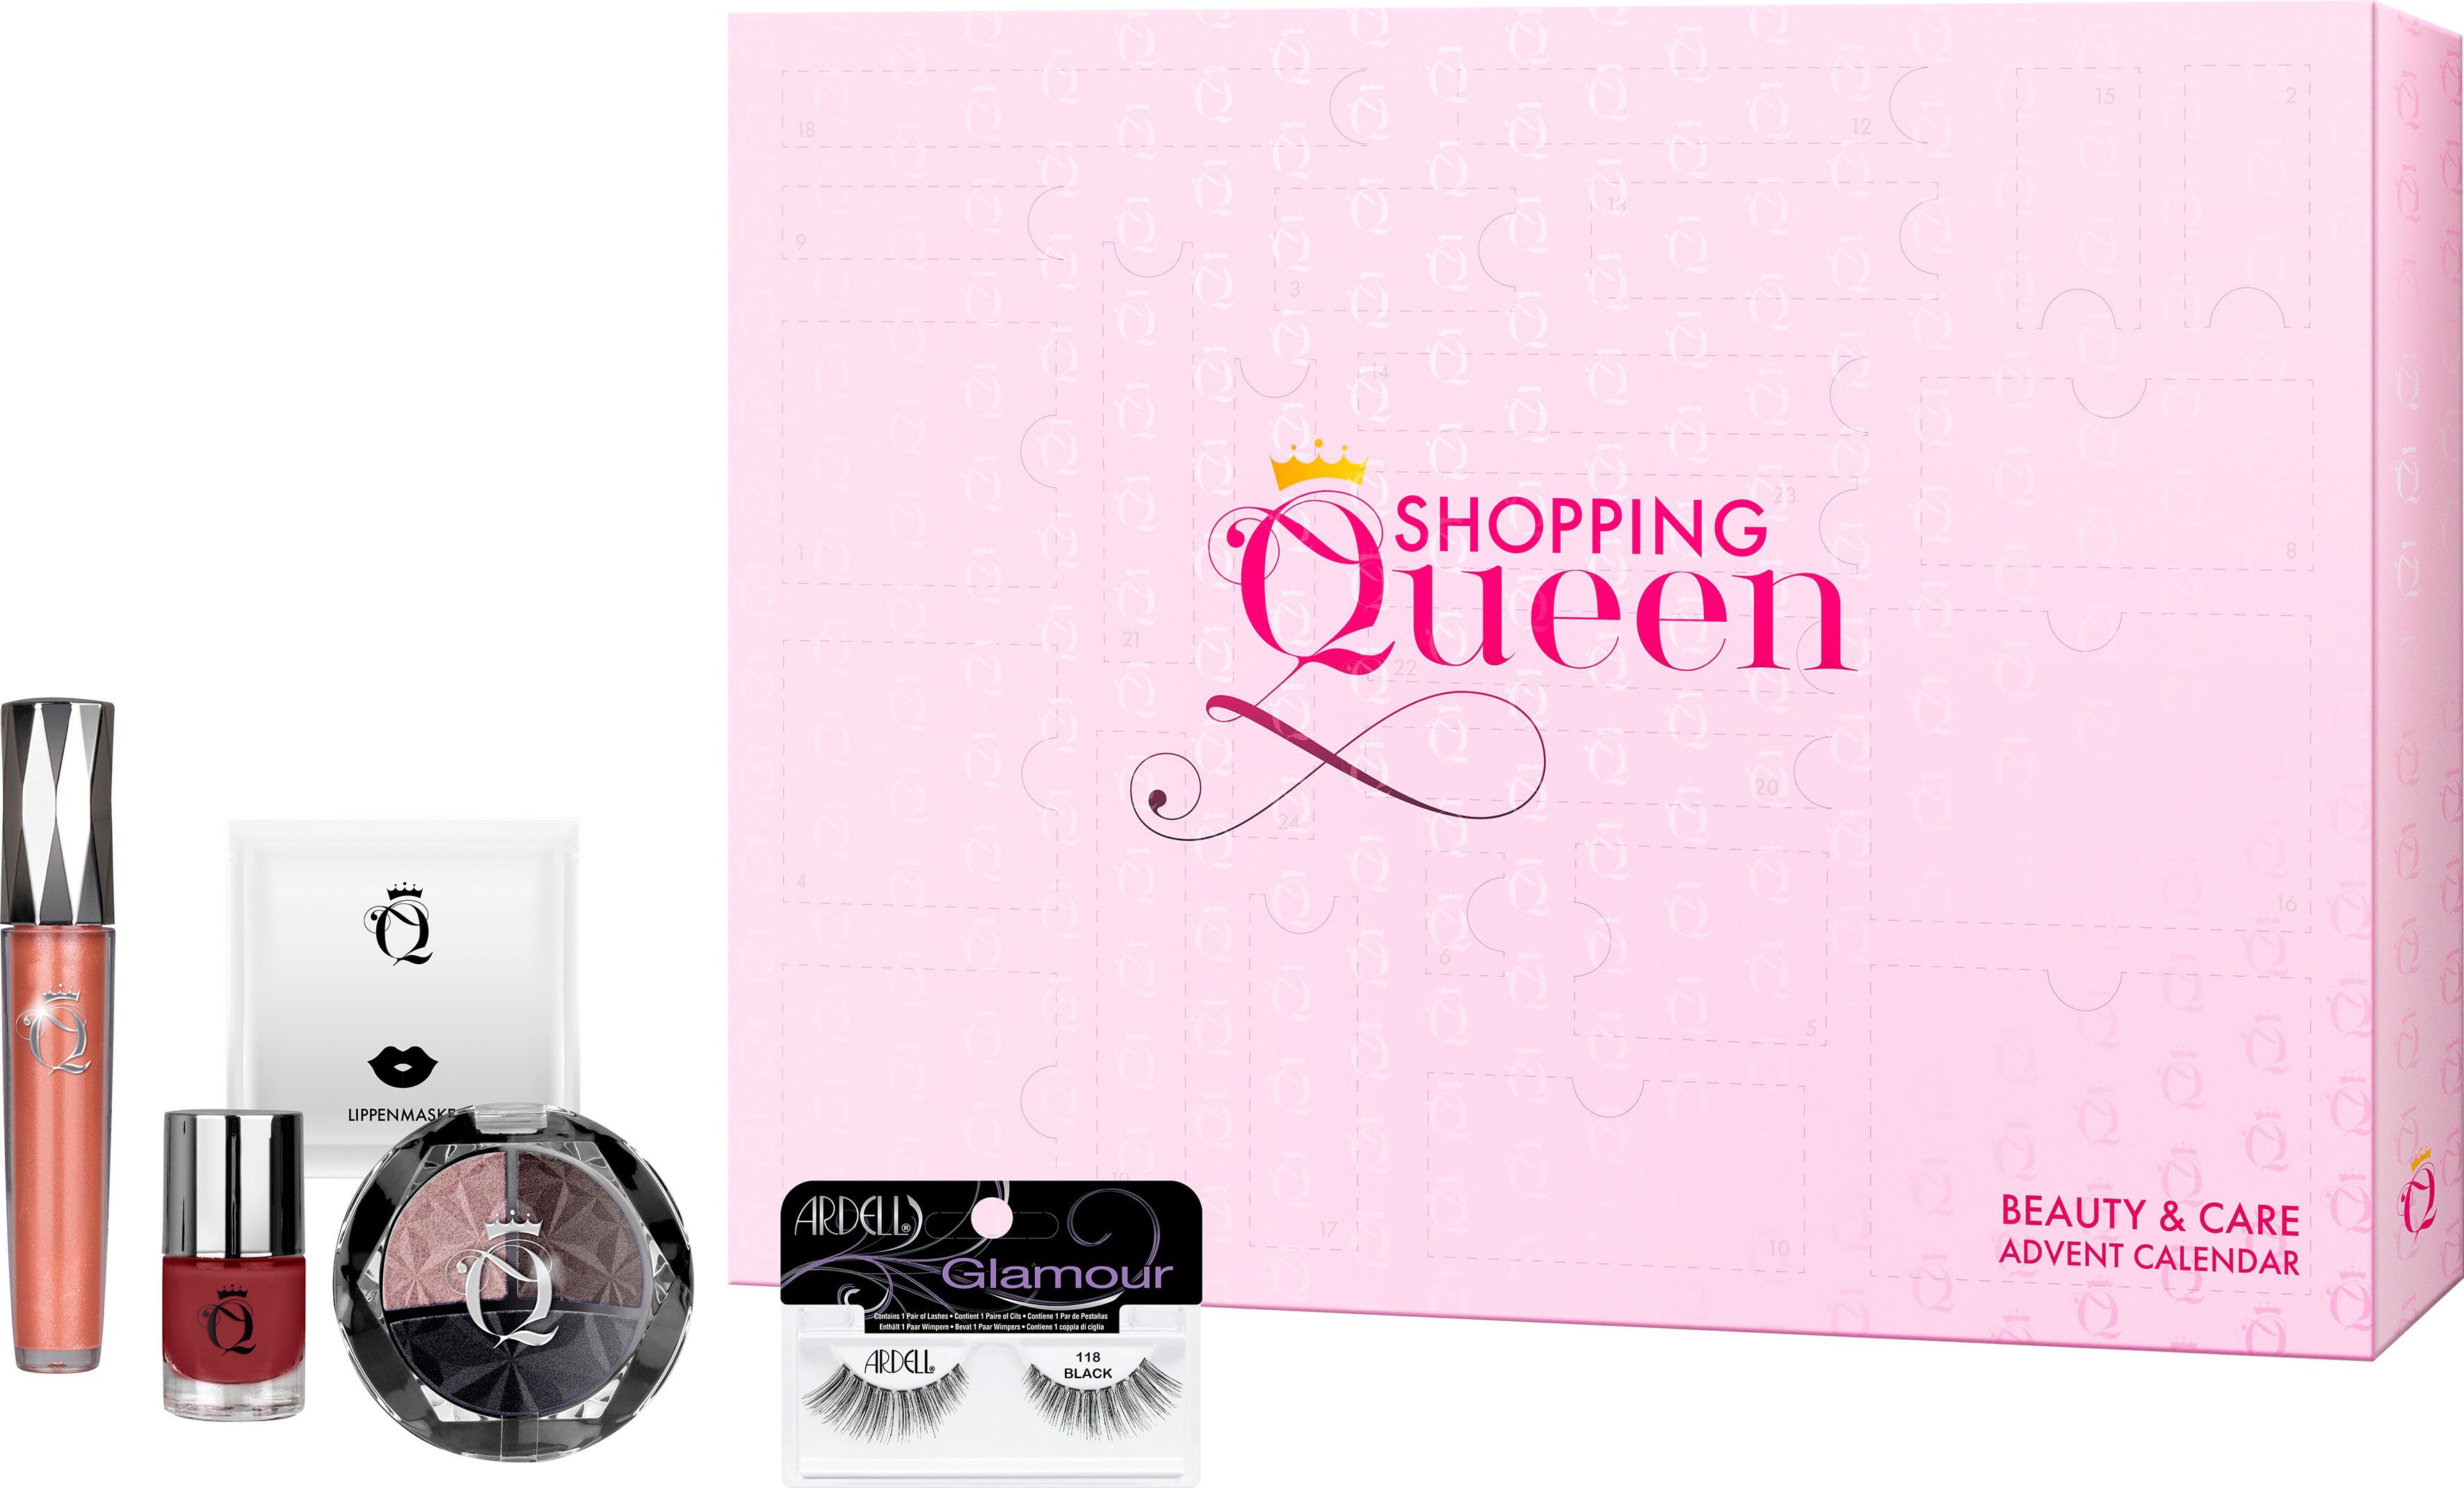 Shopping Adventskalender Queen ARDELL Queen meets Shopping